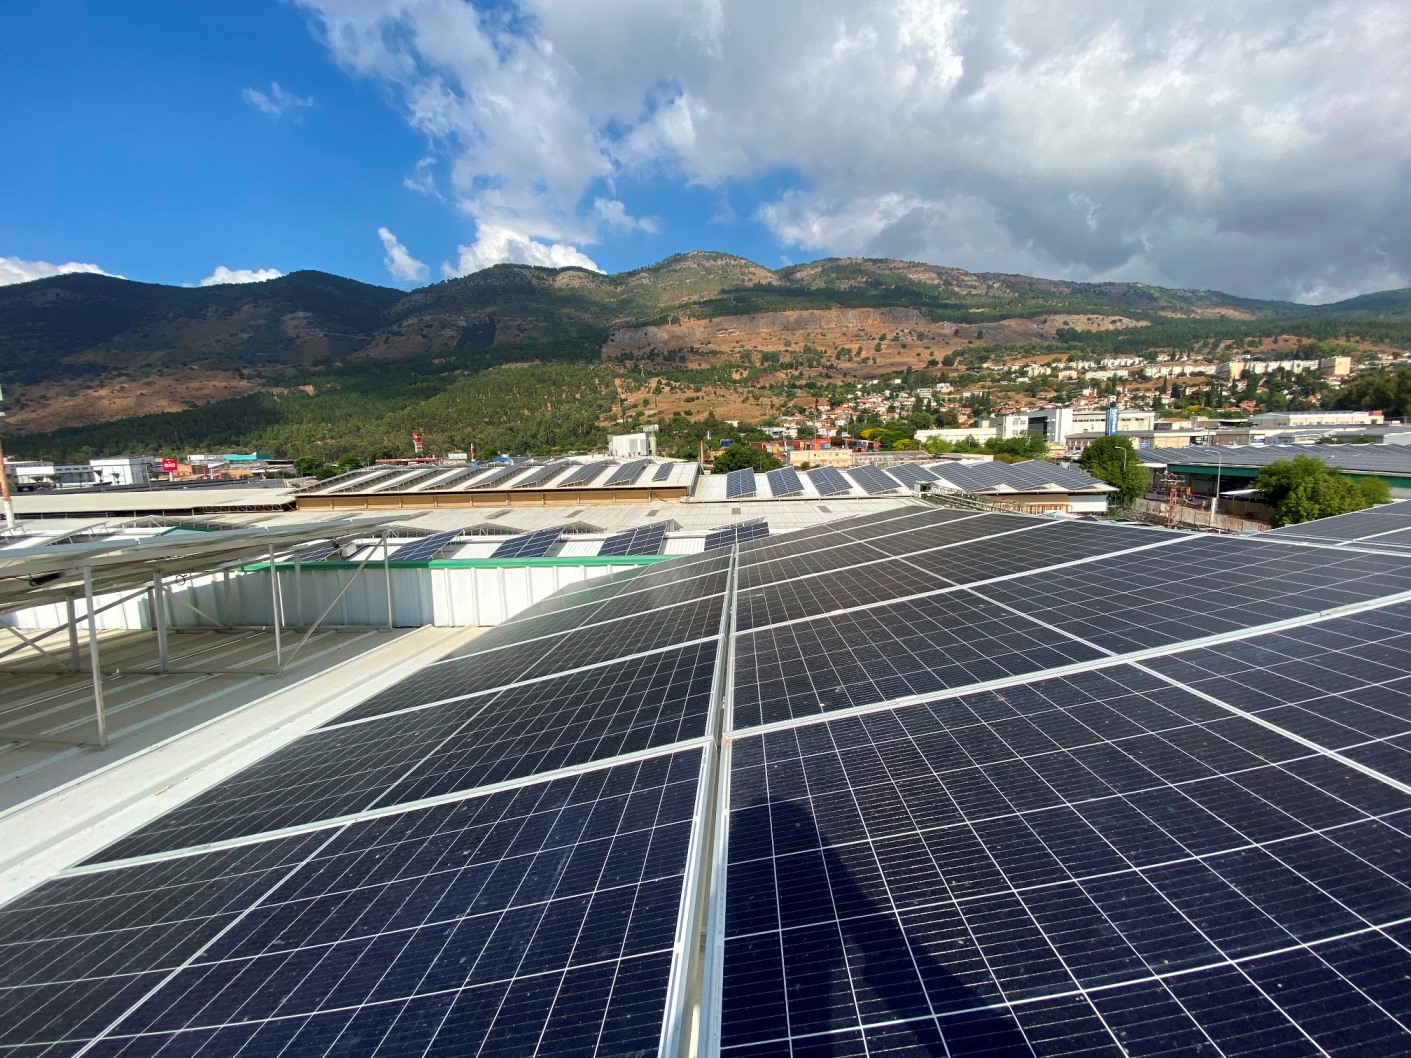 פרויקט של החברה לפיתוח הגליל להצבת לוחות סולאריים בהשקעה של 10 מיליון ₪ על 40 דונם גגות